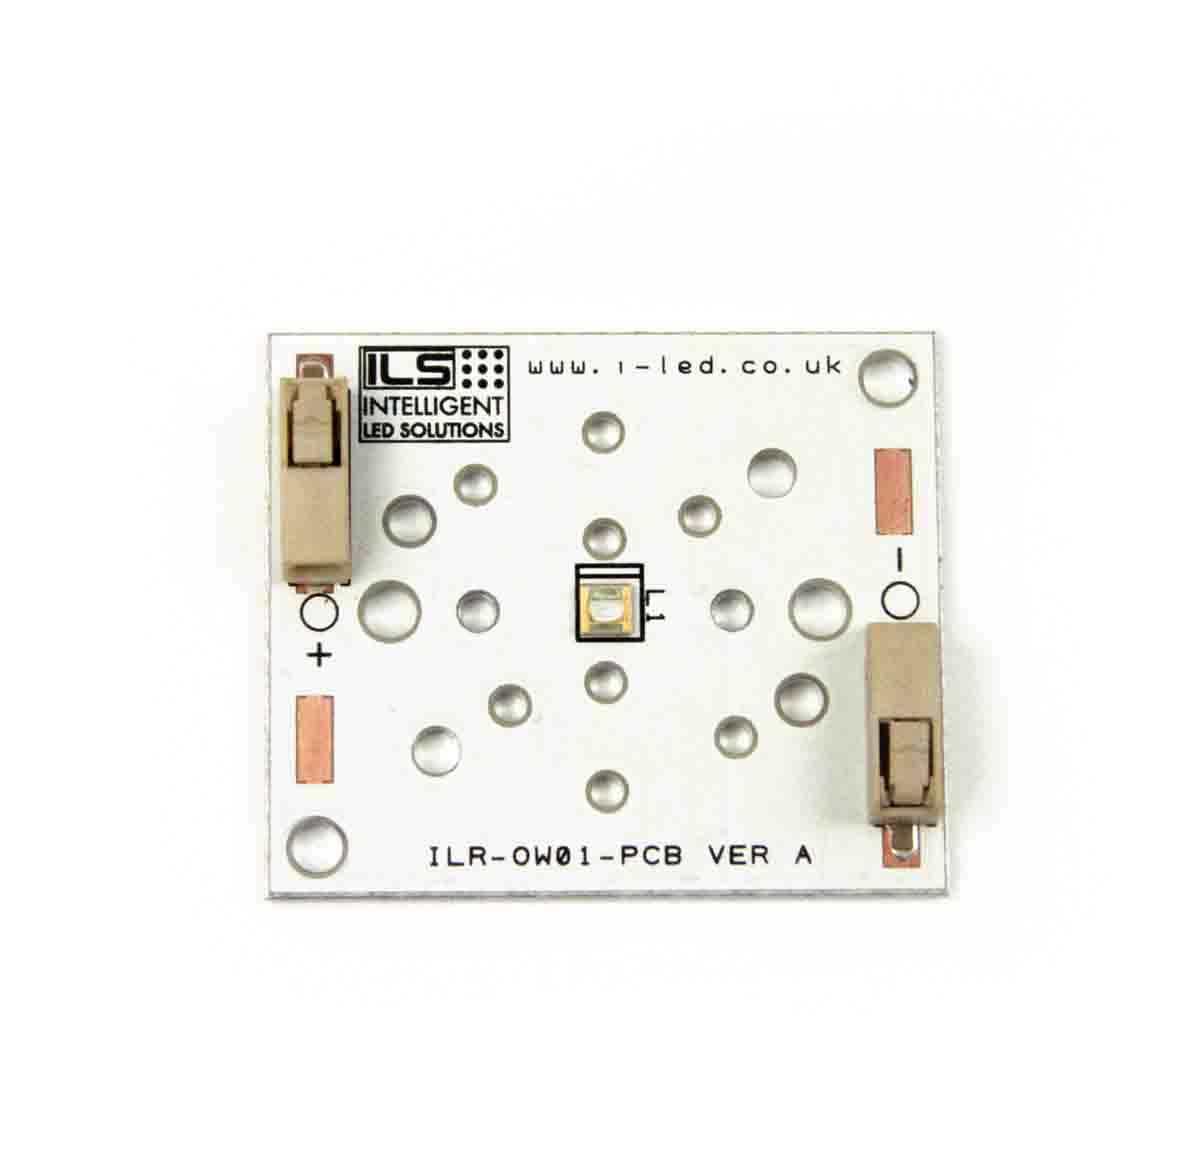 ILR-XP01-S300-LEDIL-SC201. Intelligent LED Solutions, UV LED